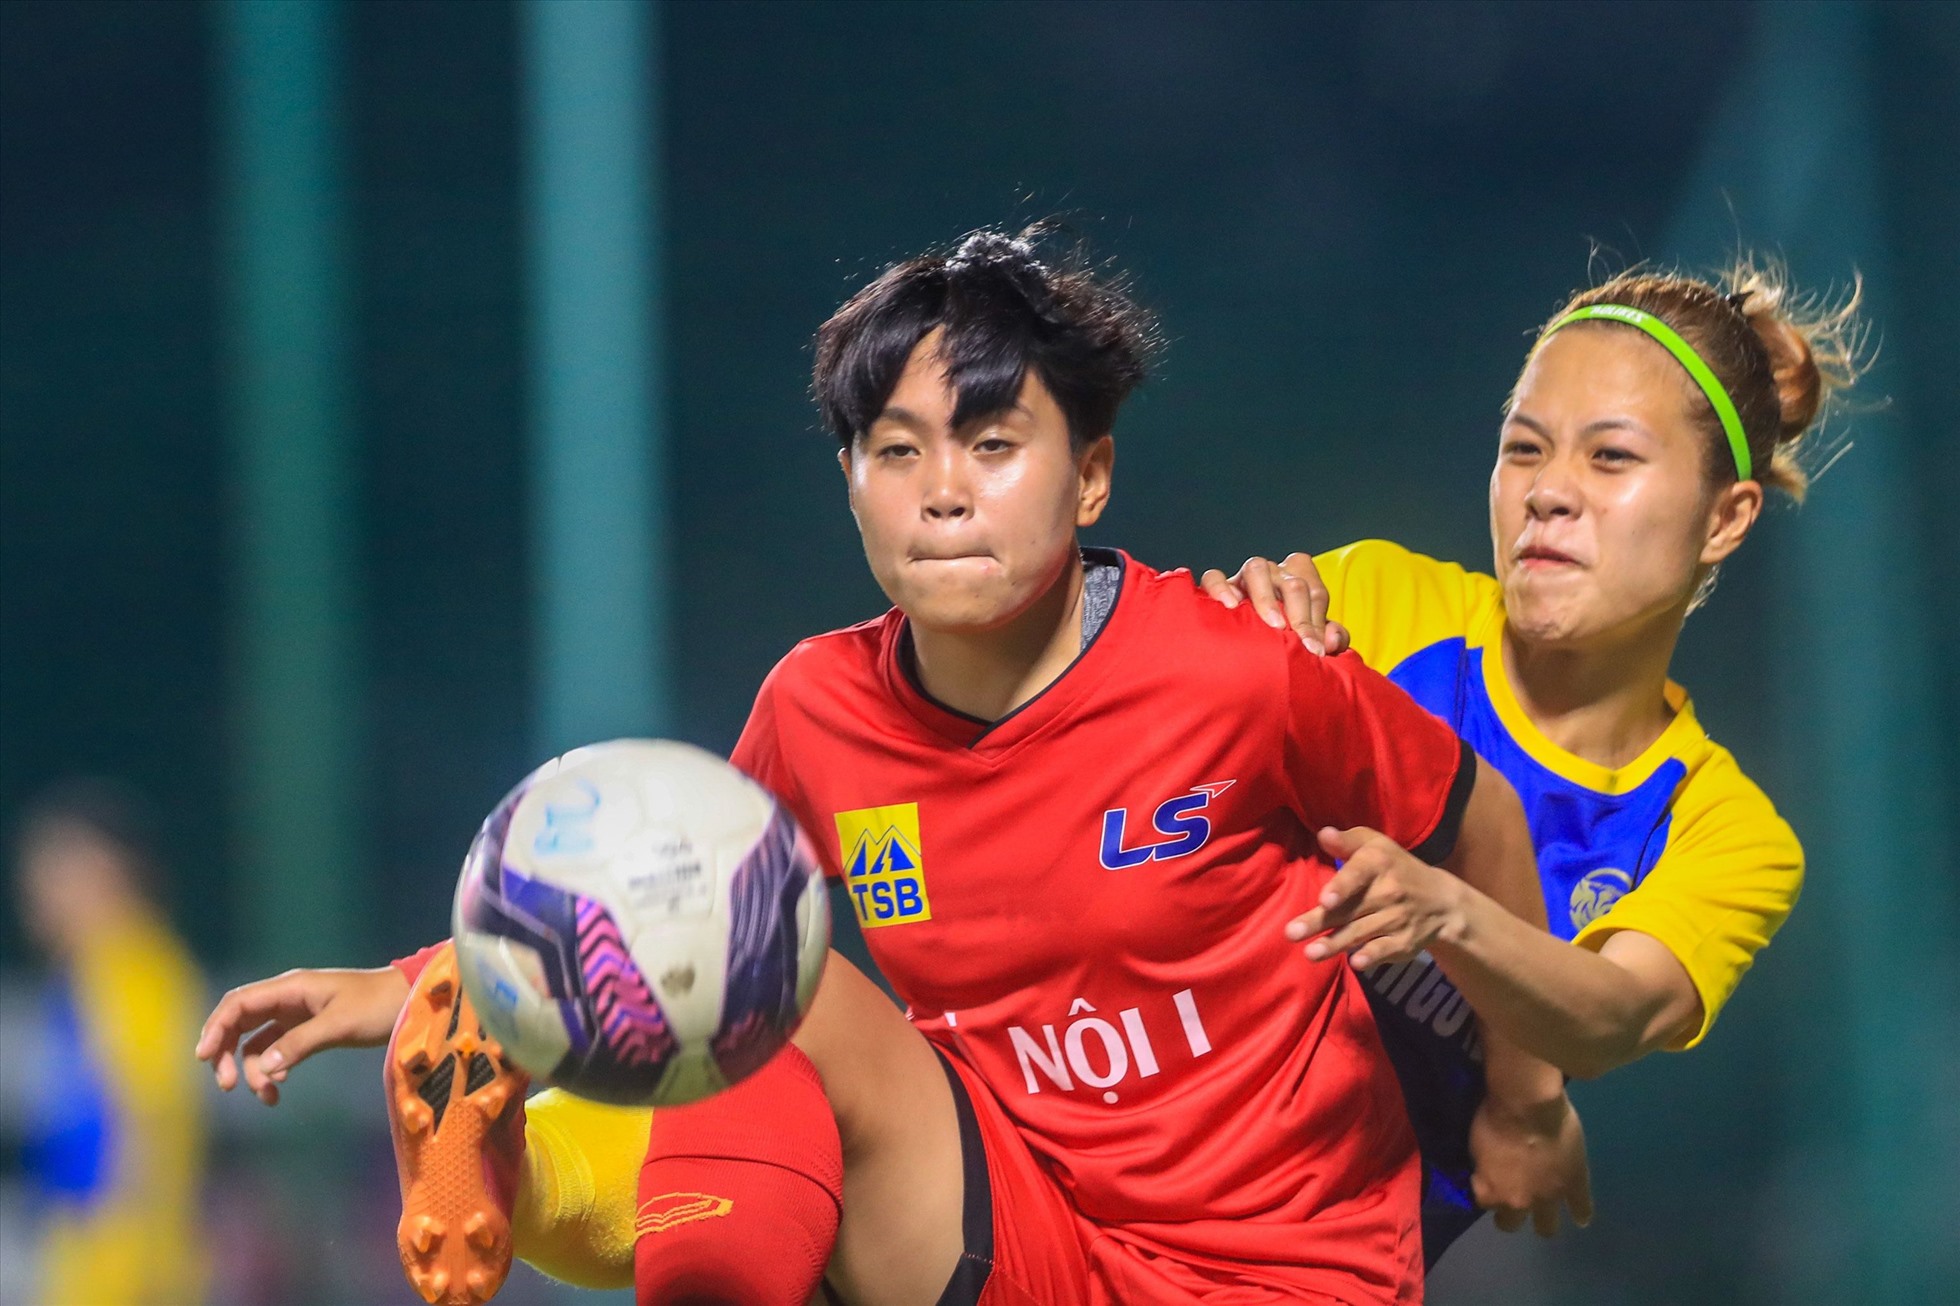 Đội nữ Hà Nội I sẽ có trận đấu khó khăn với Thái Nguyên T&T tại vòng 7 Giải nữ vô địch quốc gia - Cúp Thái Sơn Bắc 2022. Ảnh: VFF